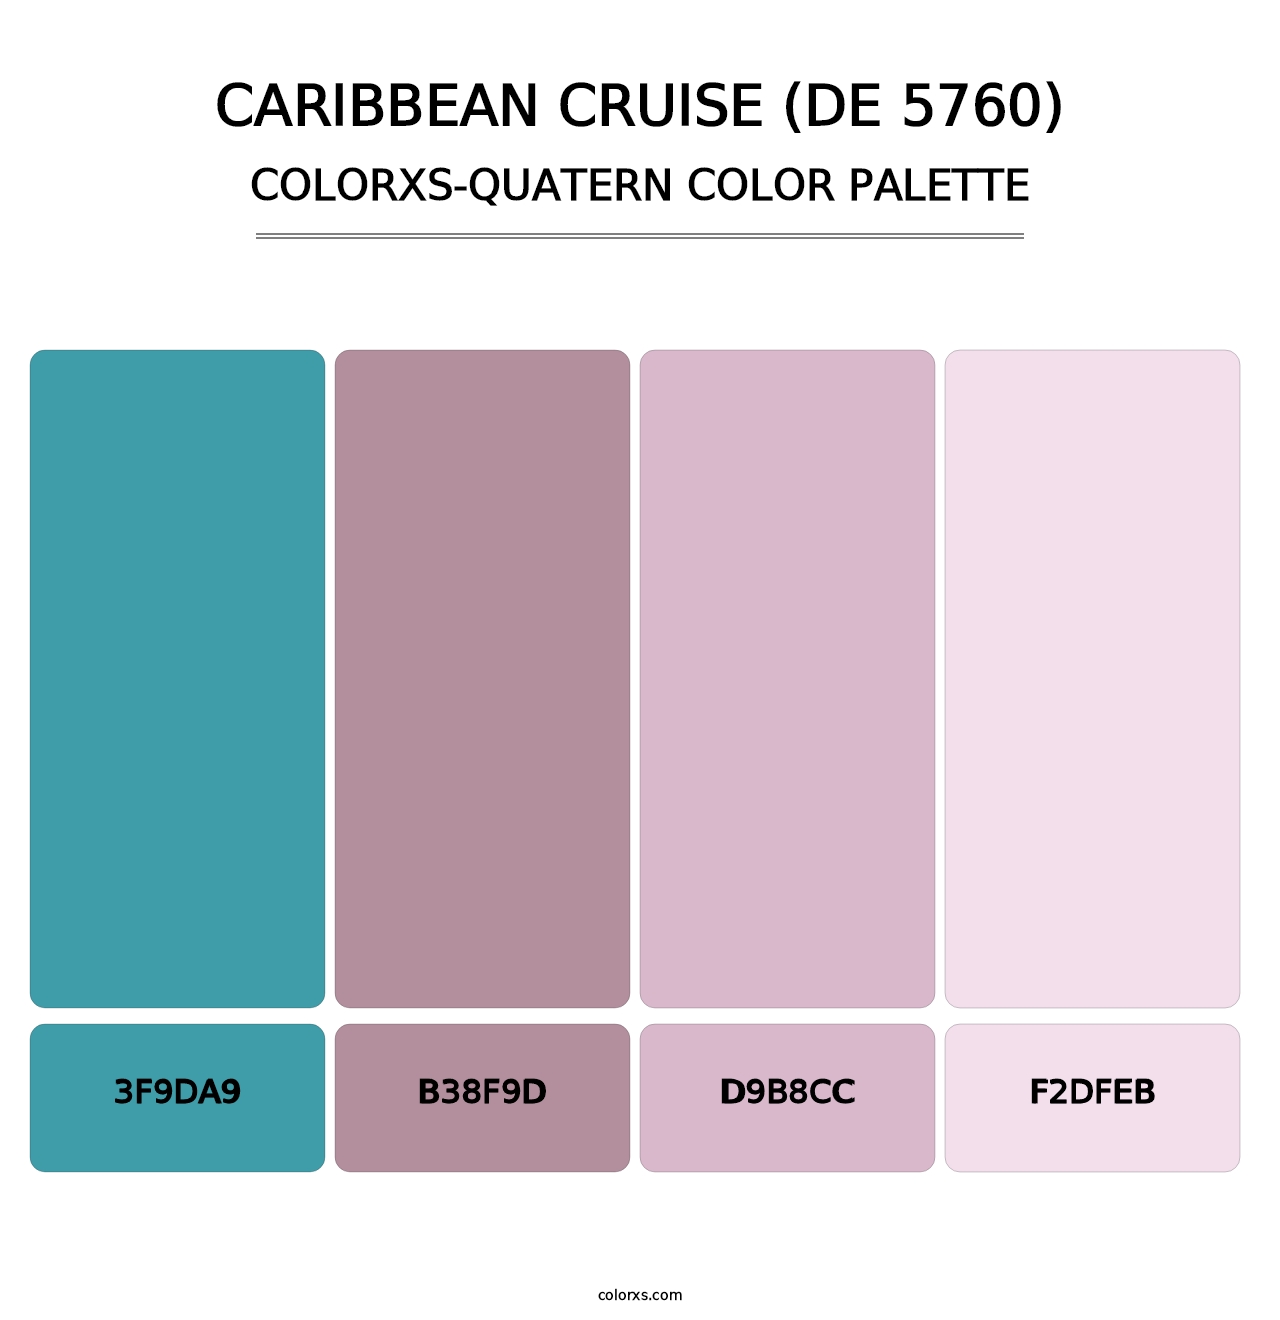 Caribbean Cruise (DE 5760) - Colorxs Quatern Palette